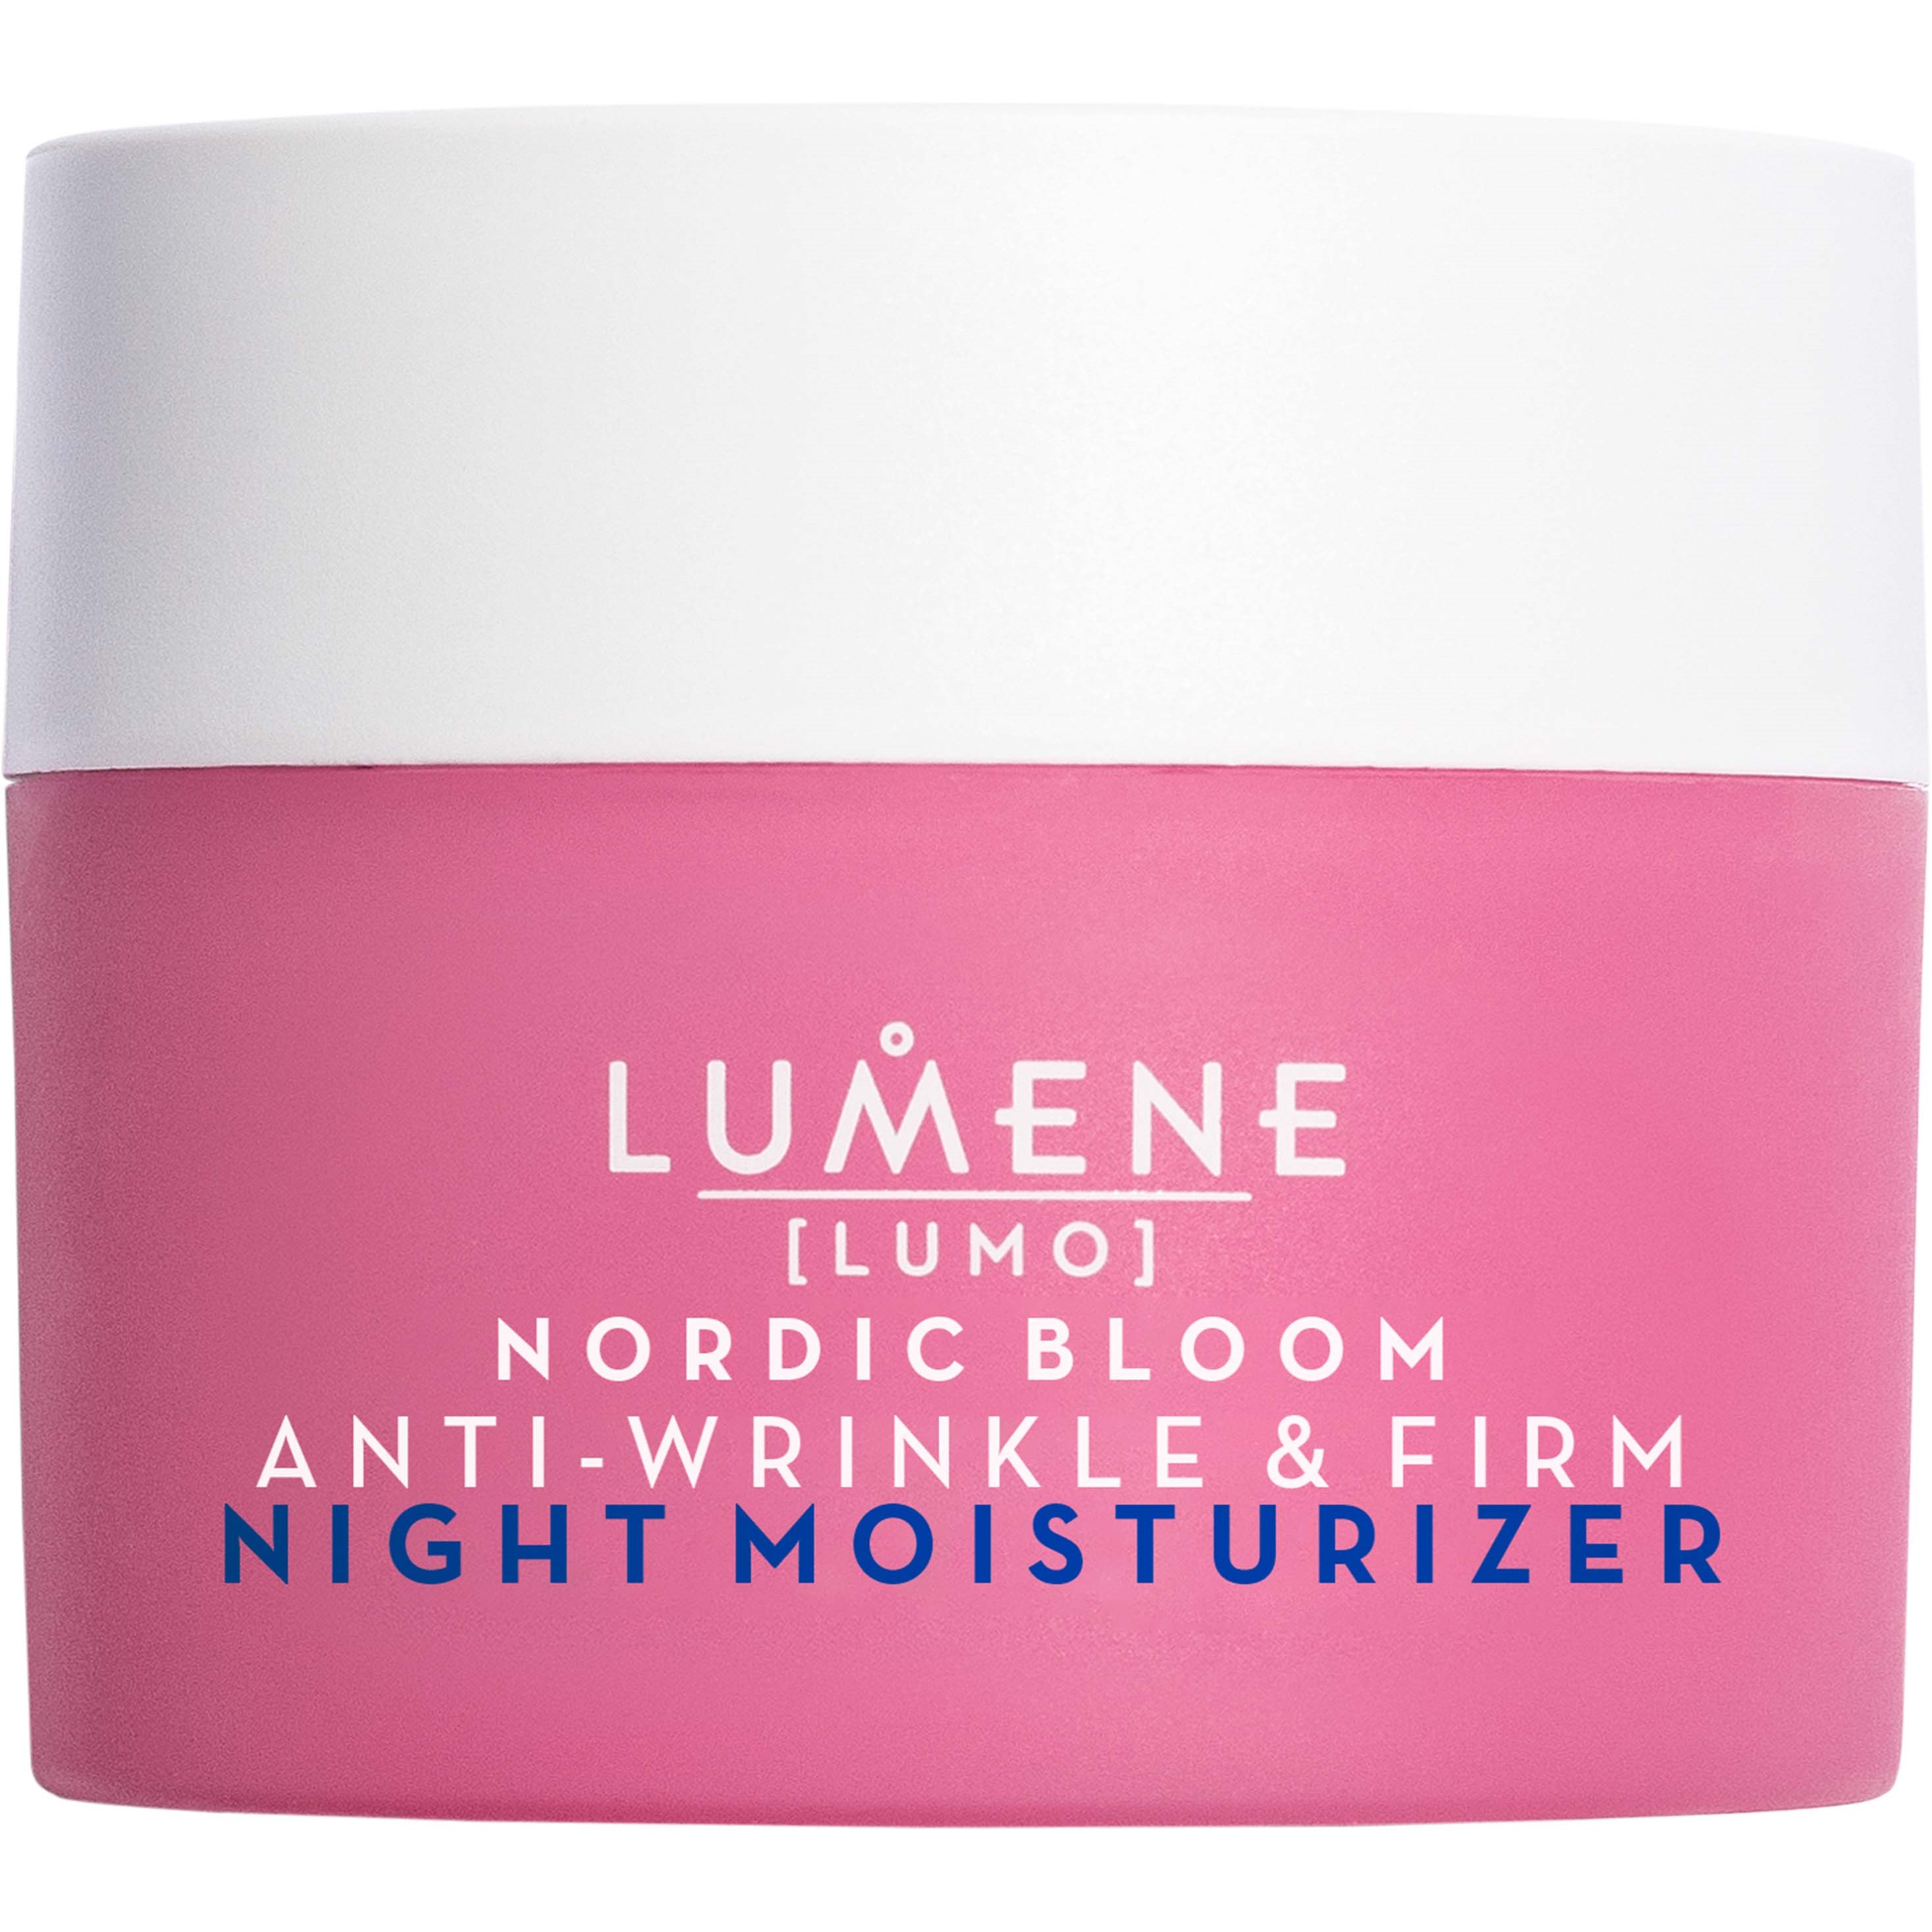 Bilde av Lumene Nordic Bloom Anti-wrinkle & Firm Night Moisturizer 50 Ml